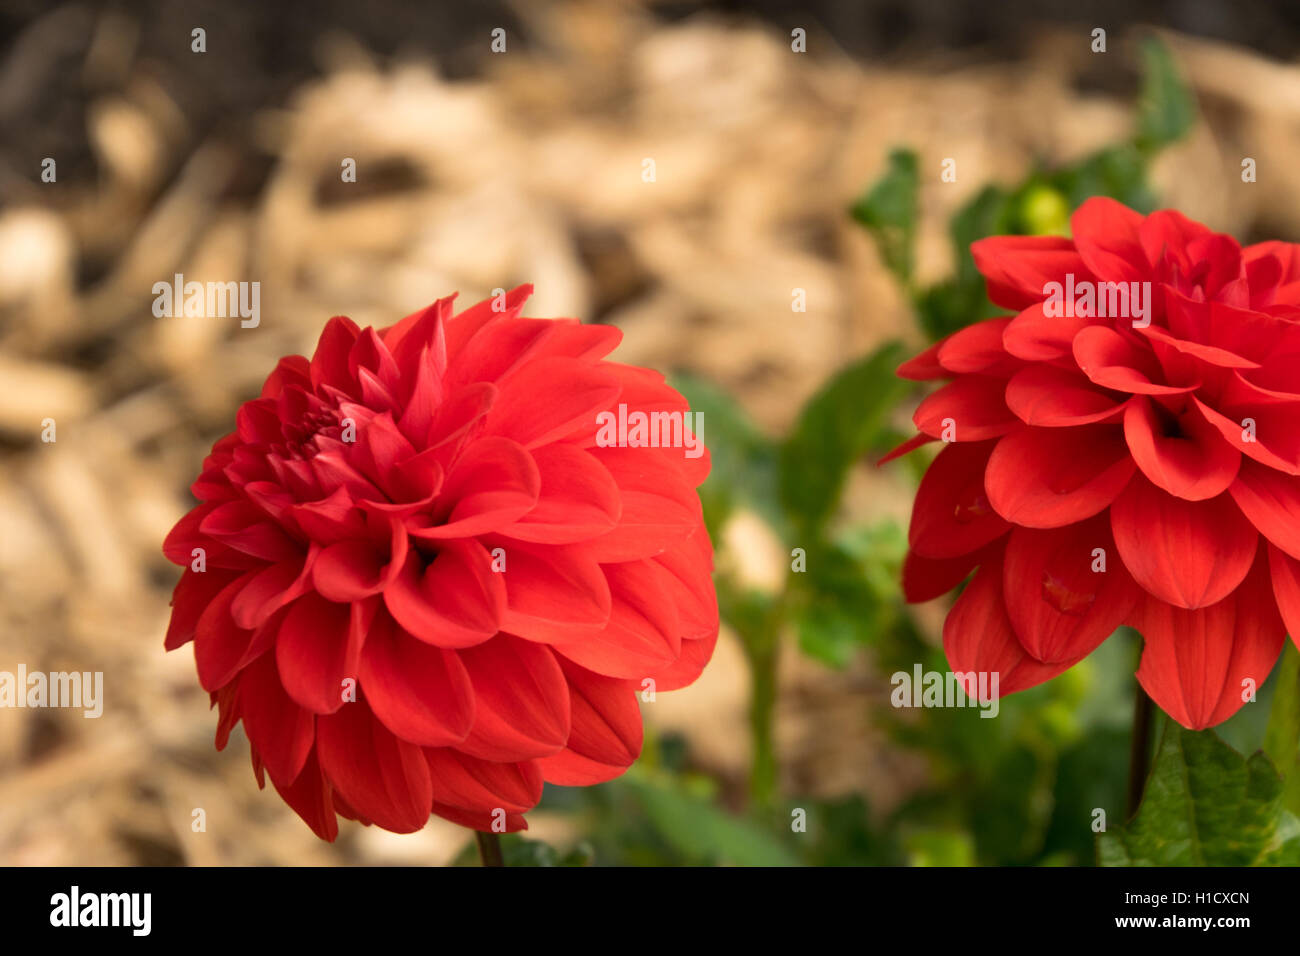 Red Dwarf dahlia flower Stock Photo